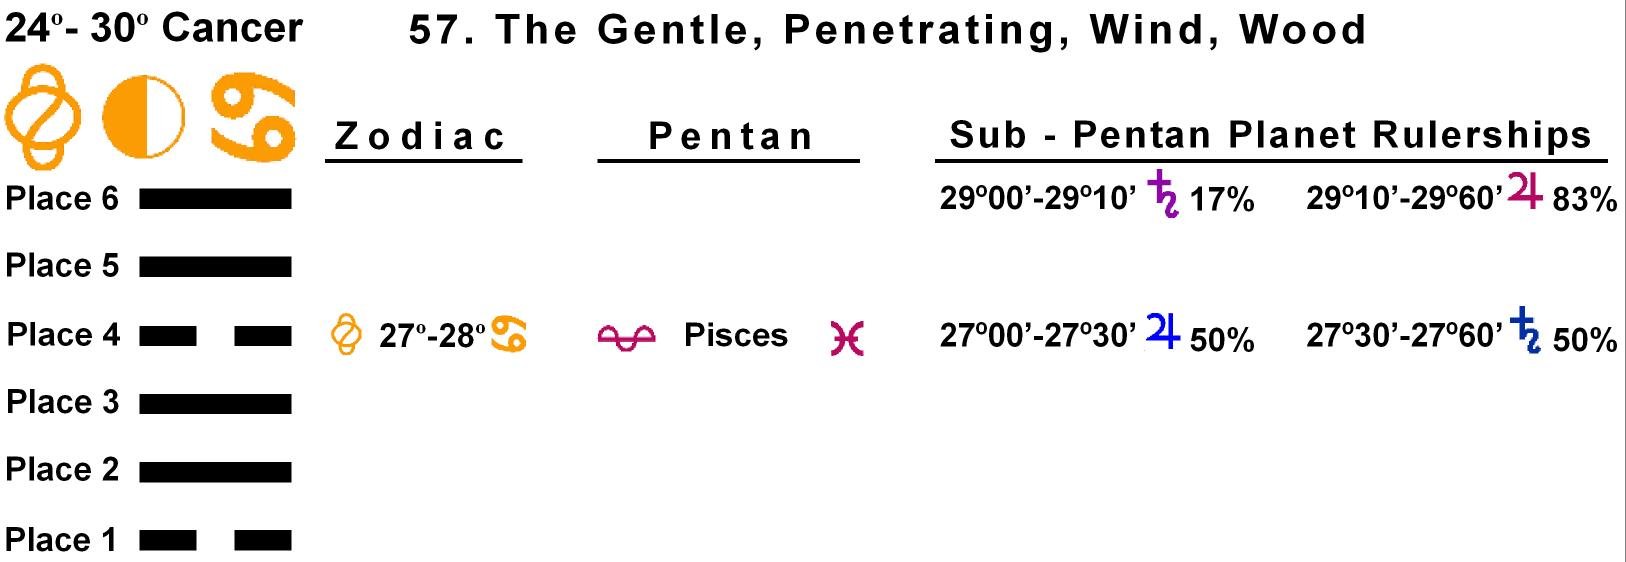 Pent-lines-04CA 27-28 Hx-57 The Gentle